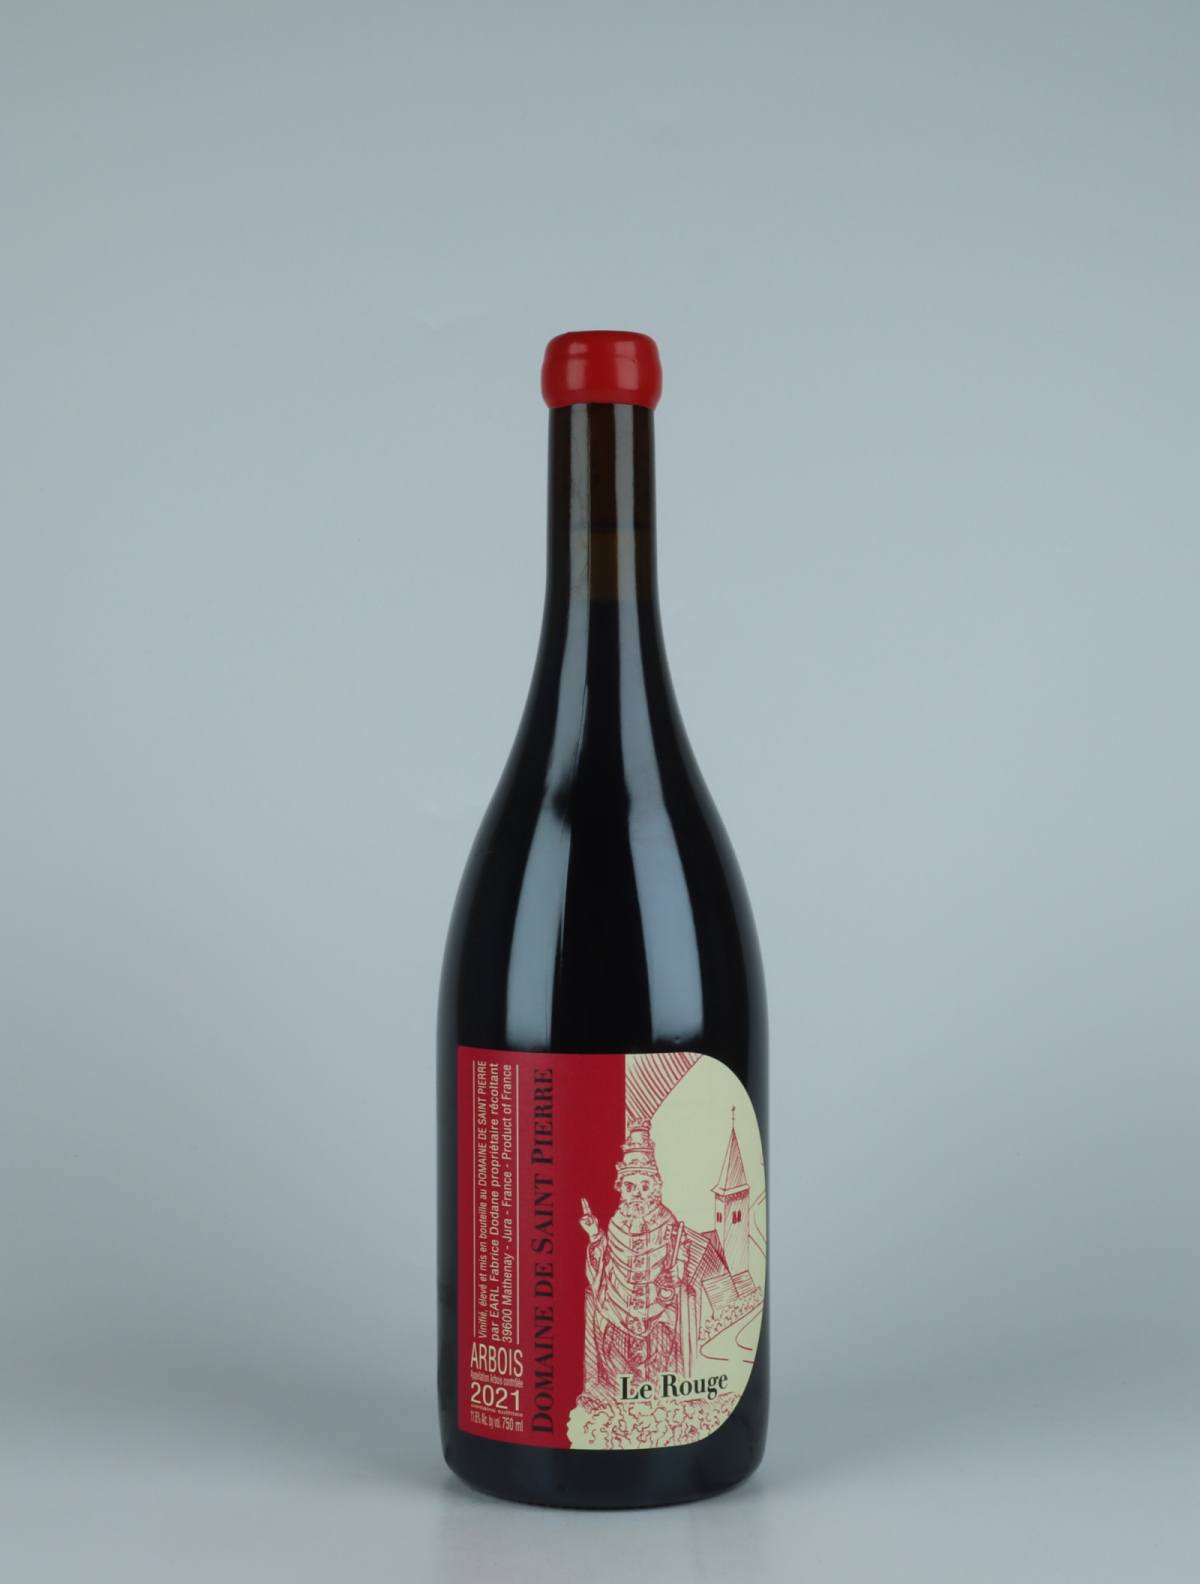 En flaske 2021 Arbois Rouge - Le Rouge Vin Rødvin fra Domaine de Saint Pierre, Jura i Frankrig